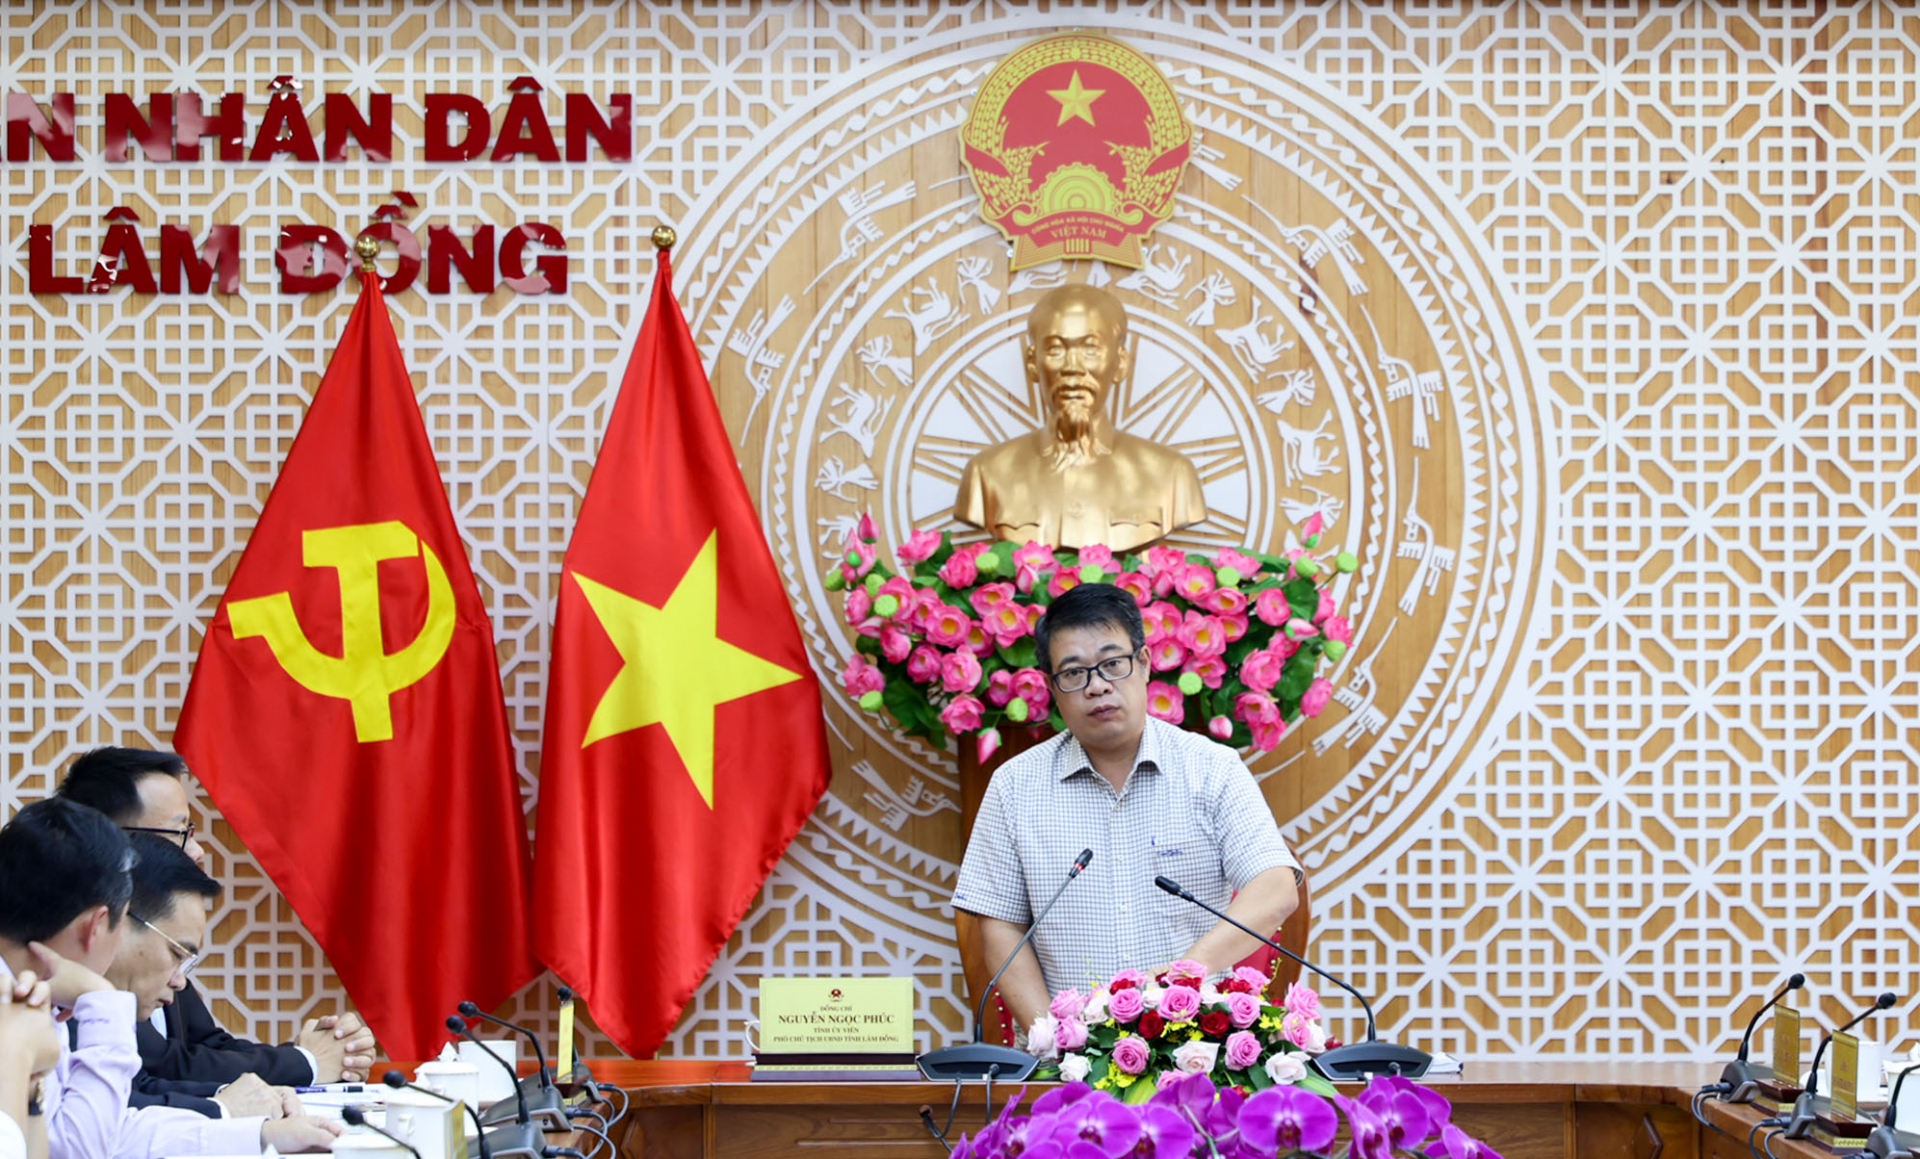 -	Phó Chủ tịch UBND tỉnh Lâm Đồng Nguyễn Ngọc Phúc chủ trì buổi làm việc với Ban Quản lý KDLQG hồ Tuyền Lâm